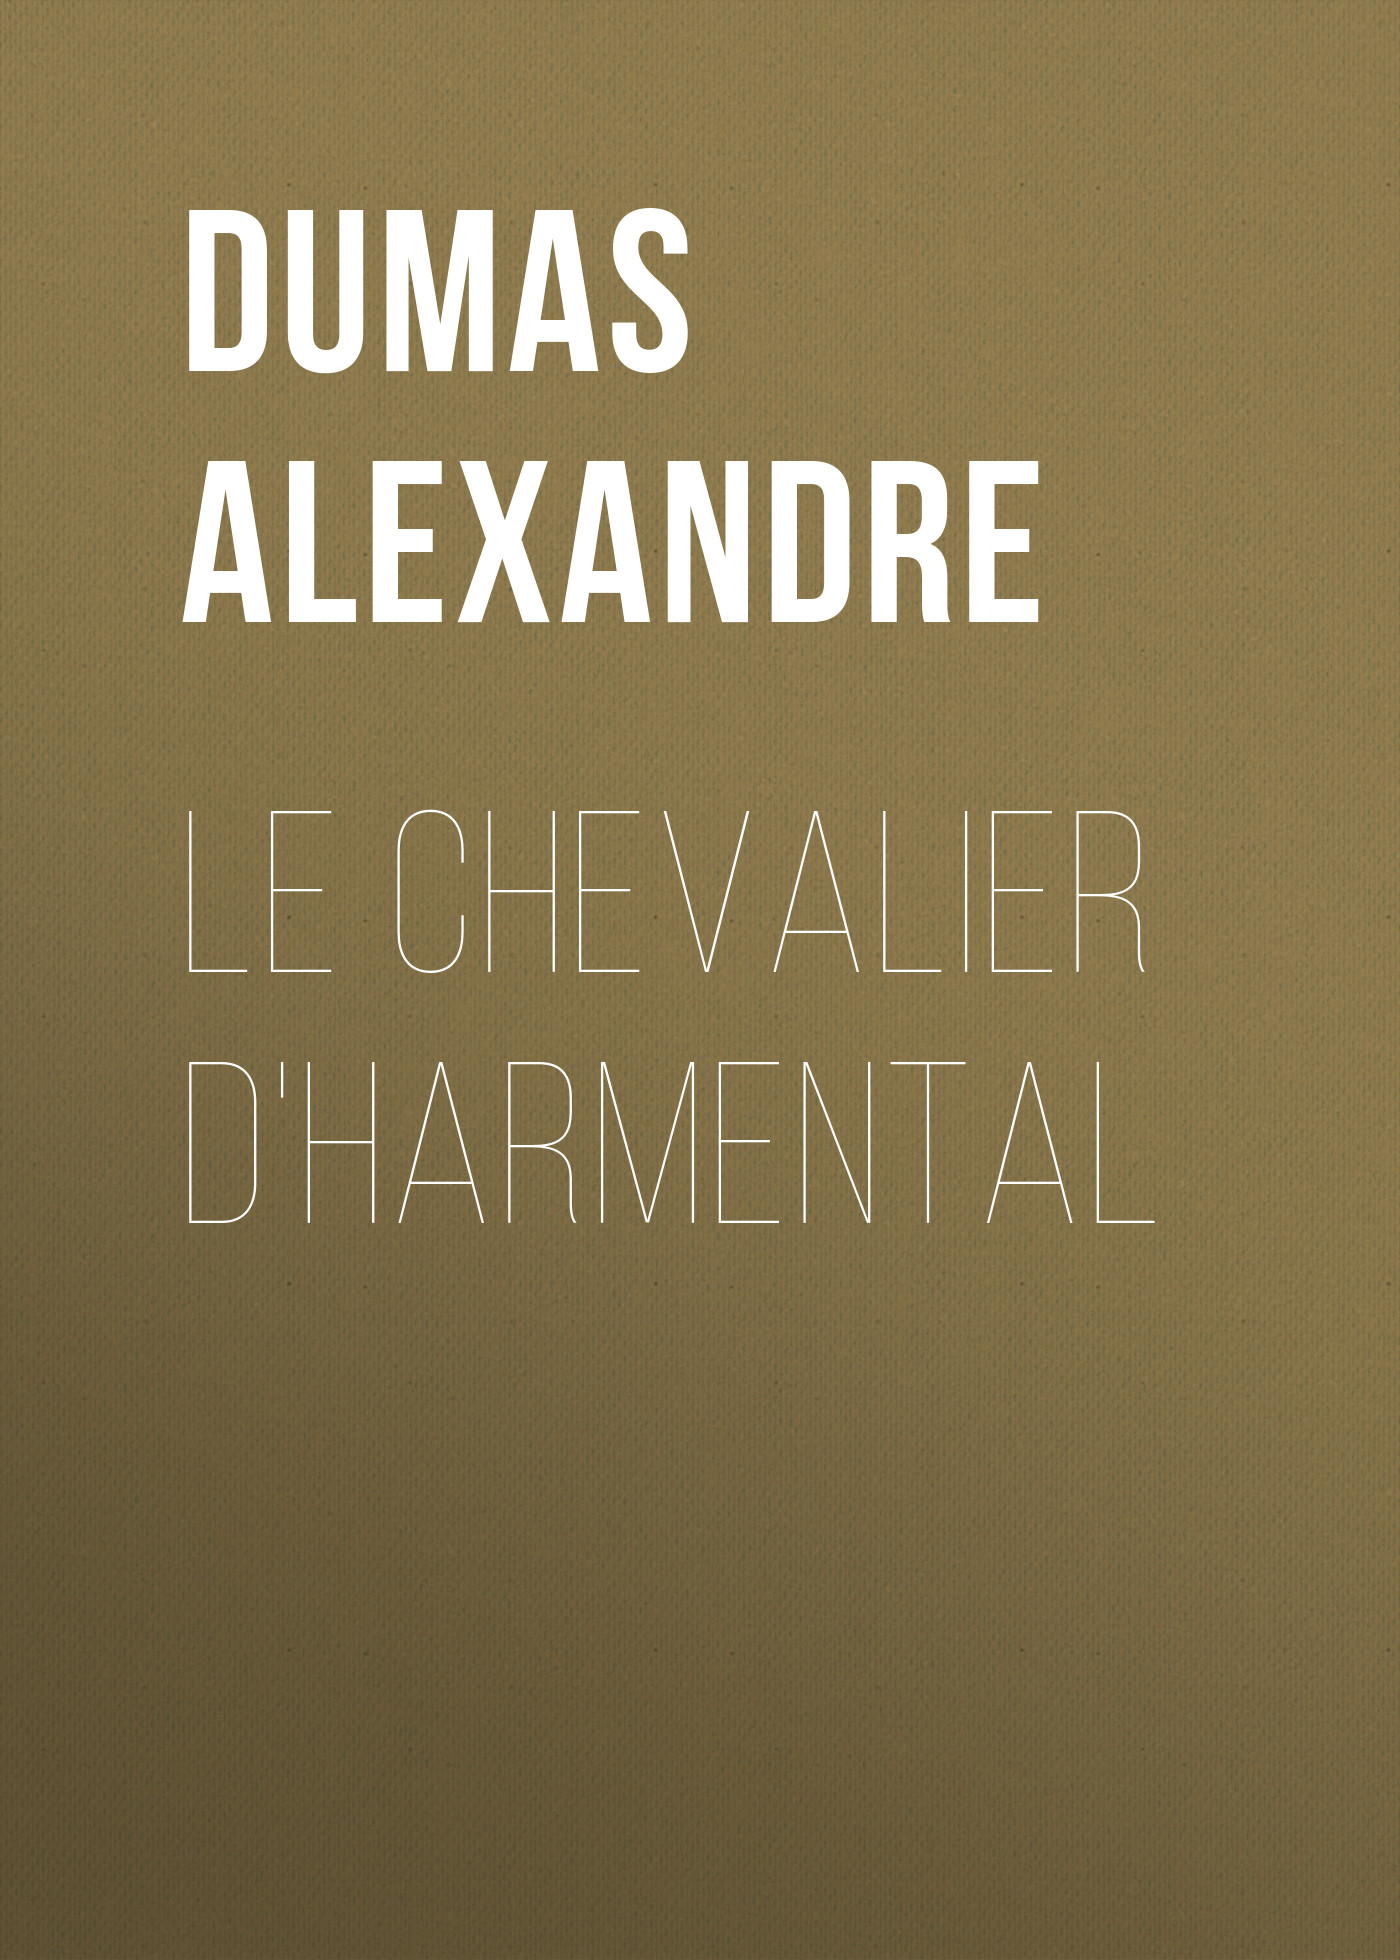 Книга Le chevalier d'Harmental из серии , созданная Alexandre Dumas, может относится к жанру Литература 19 века, Зарубежная старинная литература, Зарубежная классика. Стоимость электронной книги Le chevalier d'Harmental с идентификатором 25202271 составляет 0 руб.